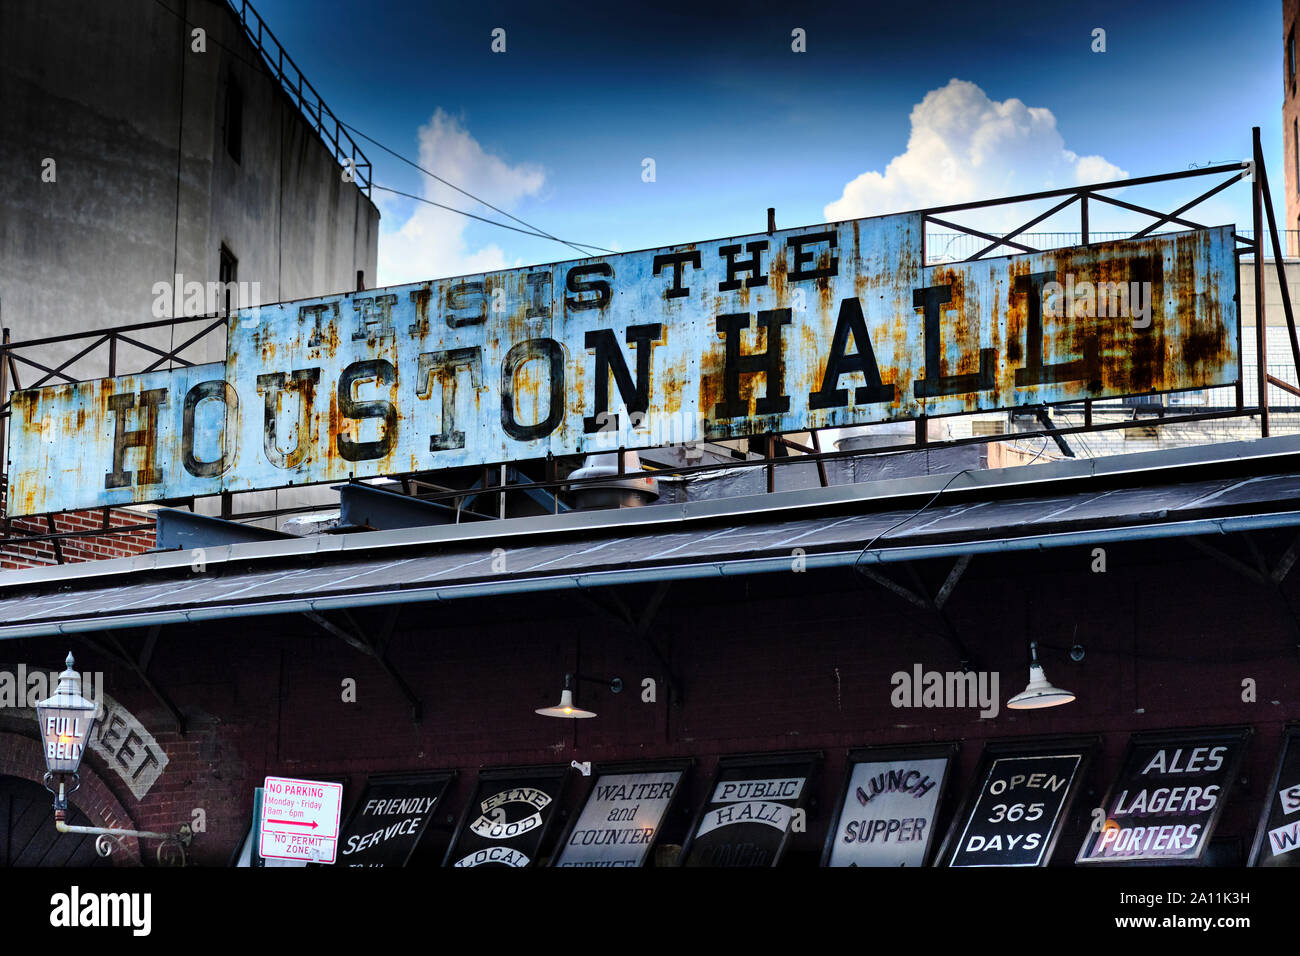 Hôtel de Houston est un aliment et beer hall avec un tour-de-la-siècle Steel mill motif, installé dans un 112-year-old garage. Greenwich Village, New York. Banque D'Images